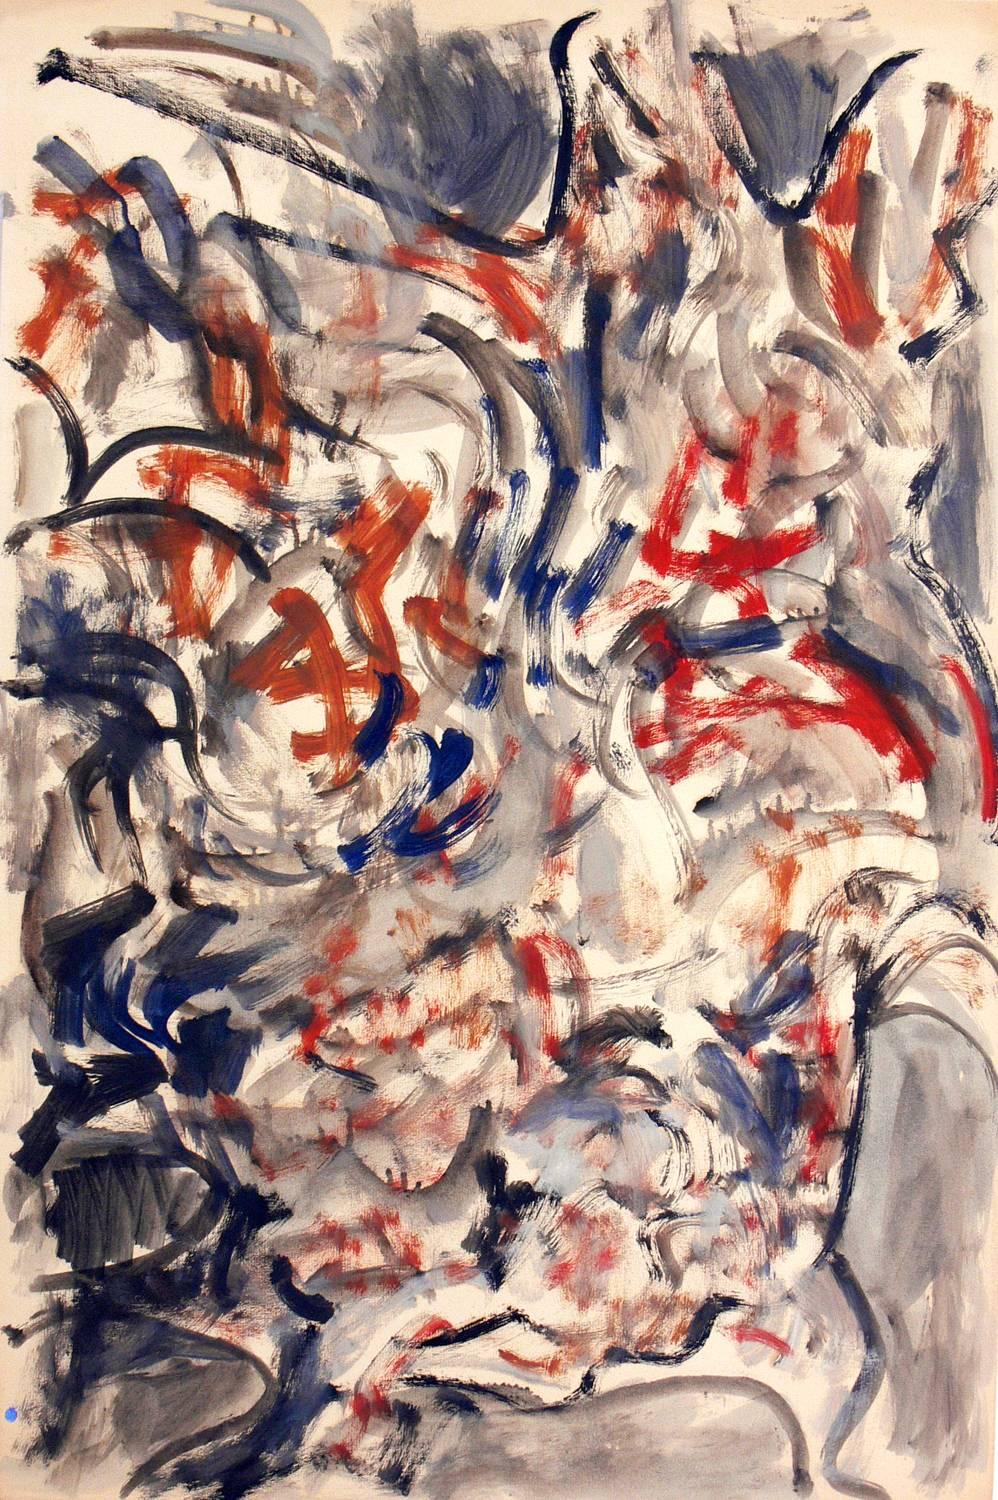 Pintura abstracta de Miriam Kubach, estadounidense, firmada y fechada en 1963. Está ejecutada sobre papel y ha sido enmarcada profesionalmente bajo cristal resistente a los rayos UV en un marco de galería de laca negra de líneas limpias.